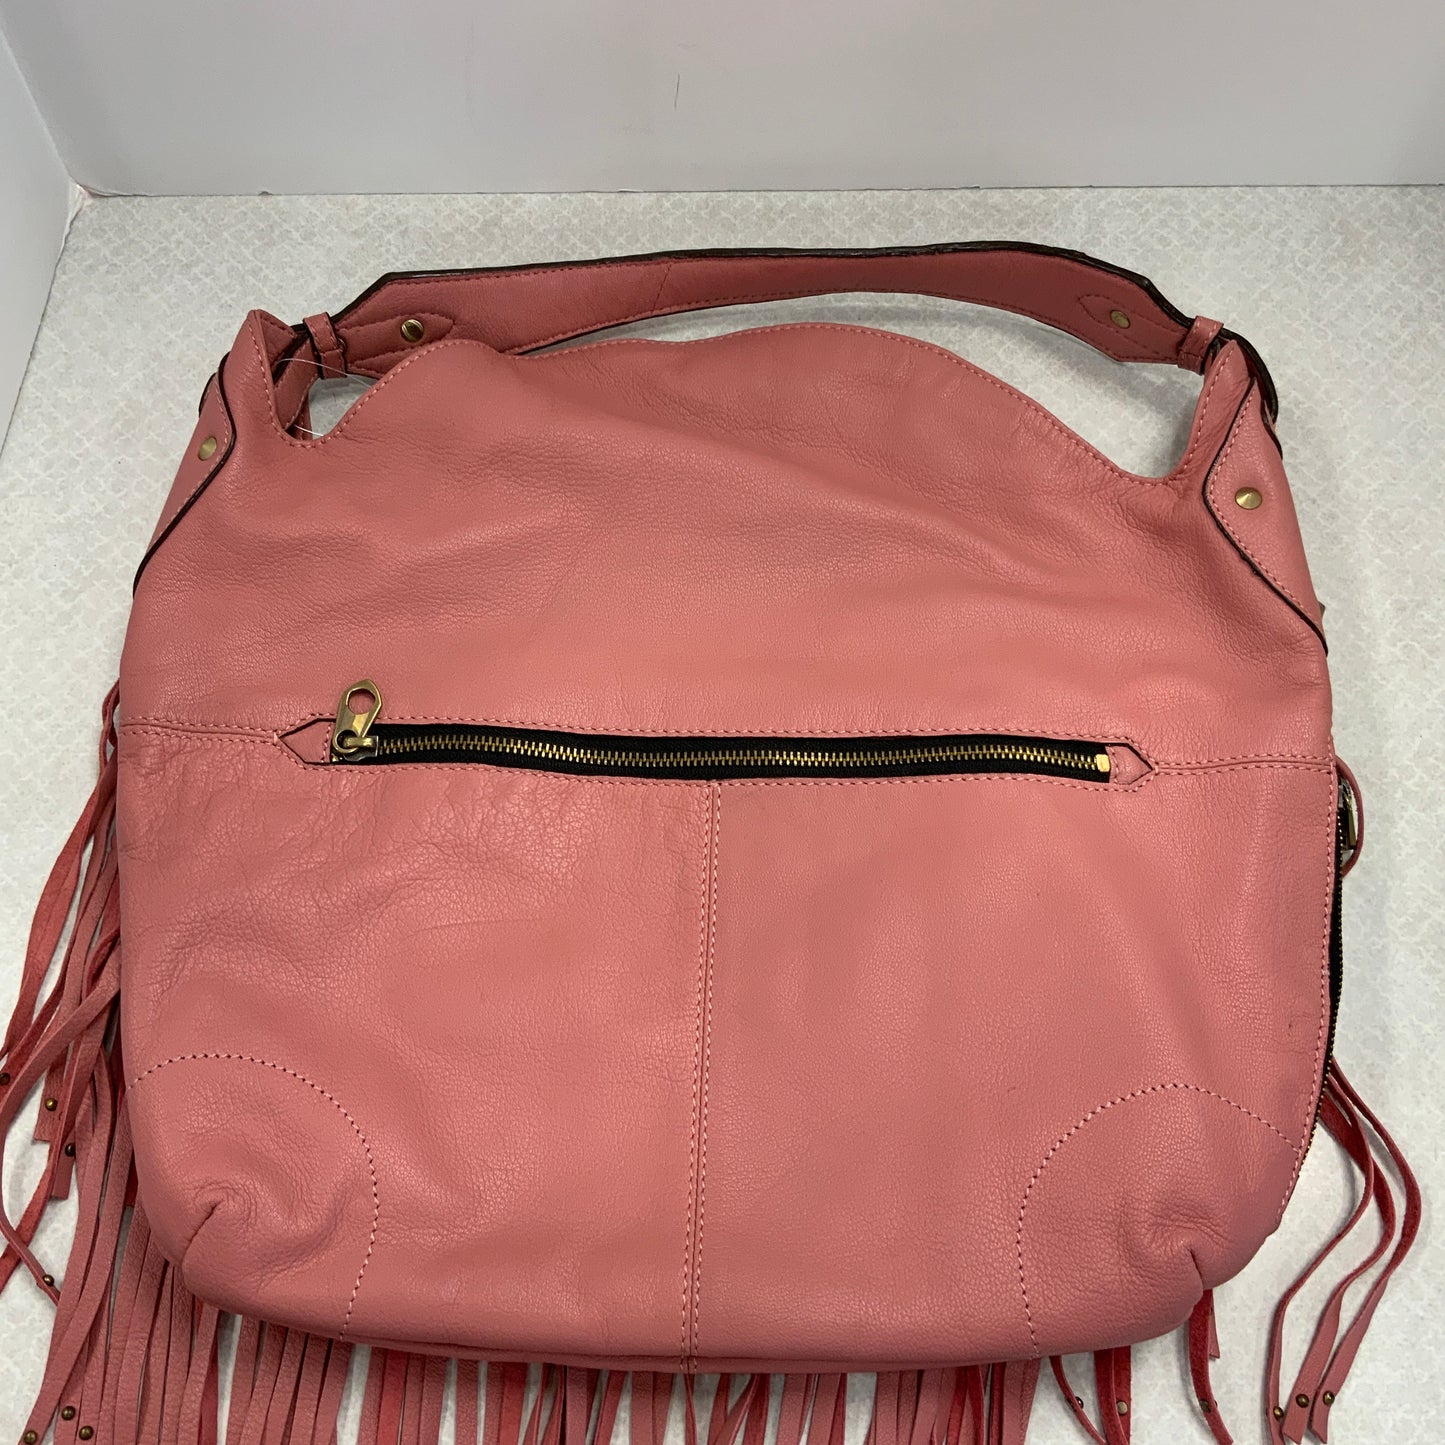 Handbag Leather Oryany, Size Large